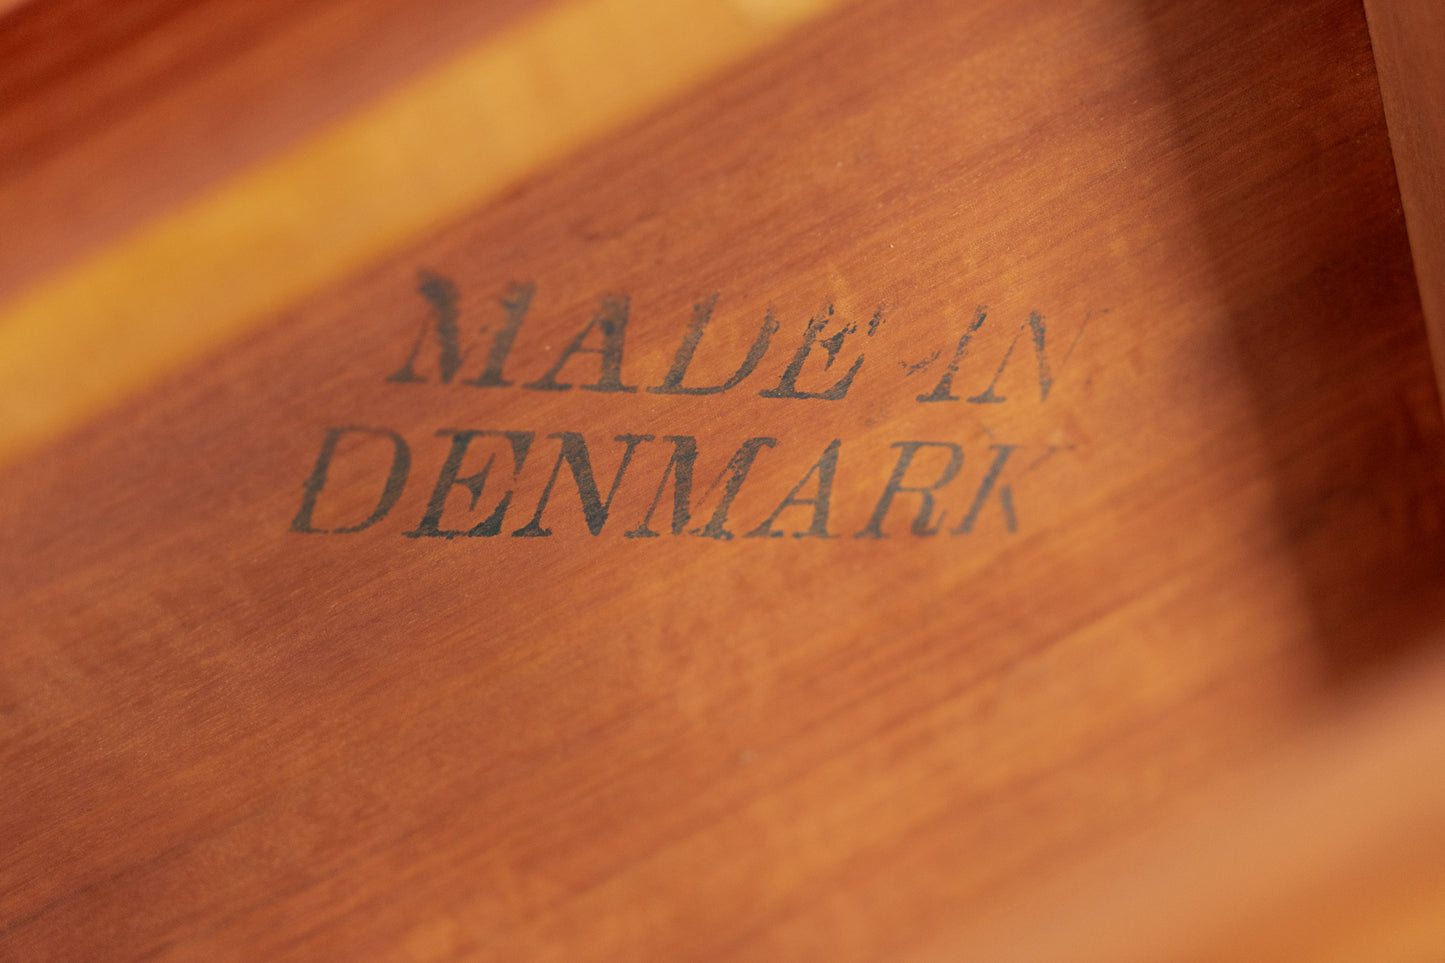 Vintage Couchtisch Beistelltisch Wohnzimmertisch Made in Denmark Holz Teak Mid Century